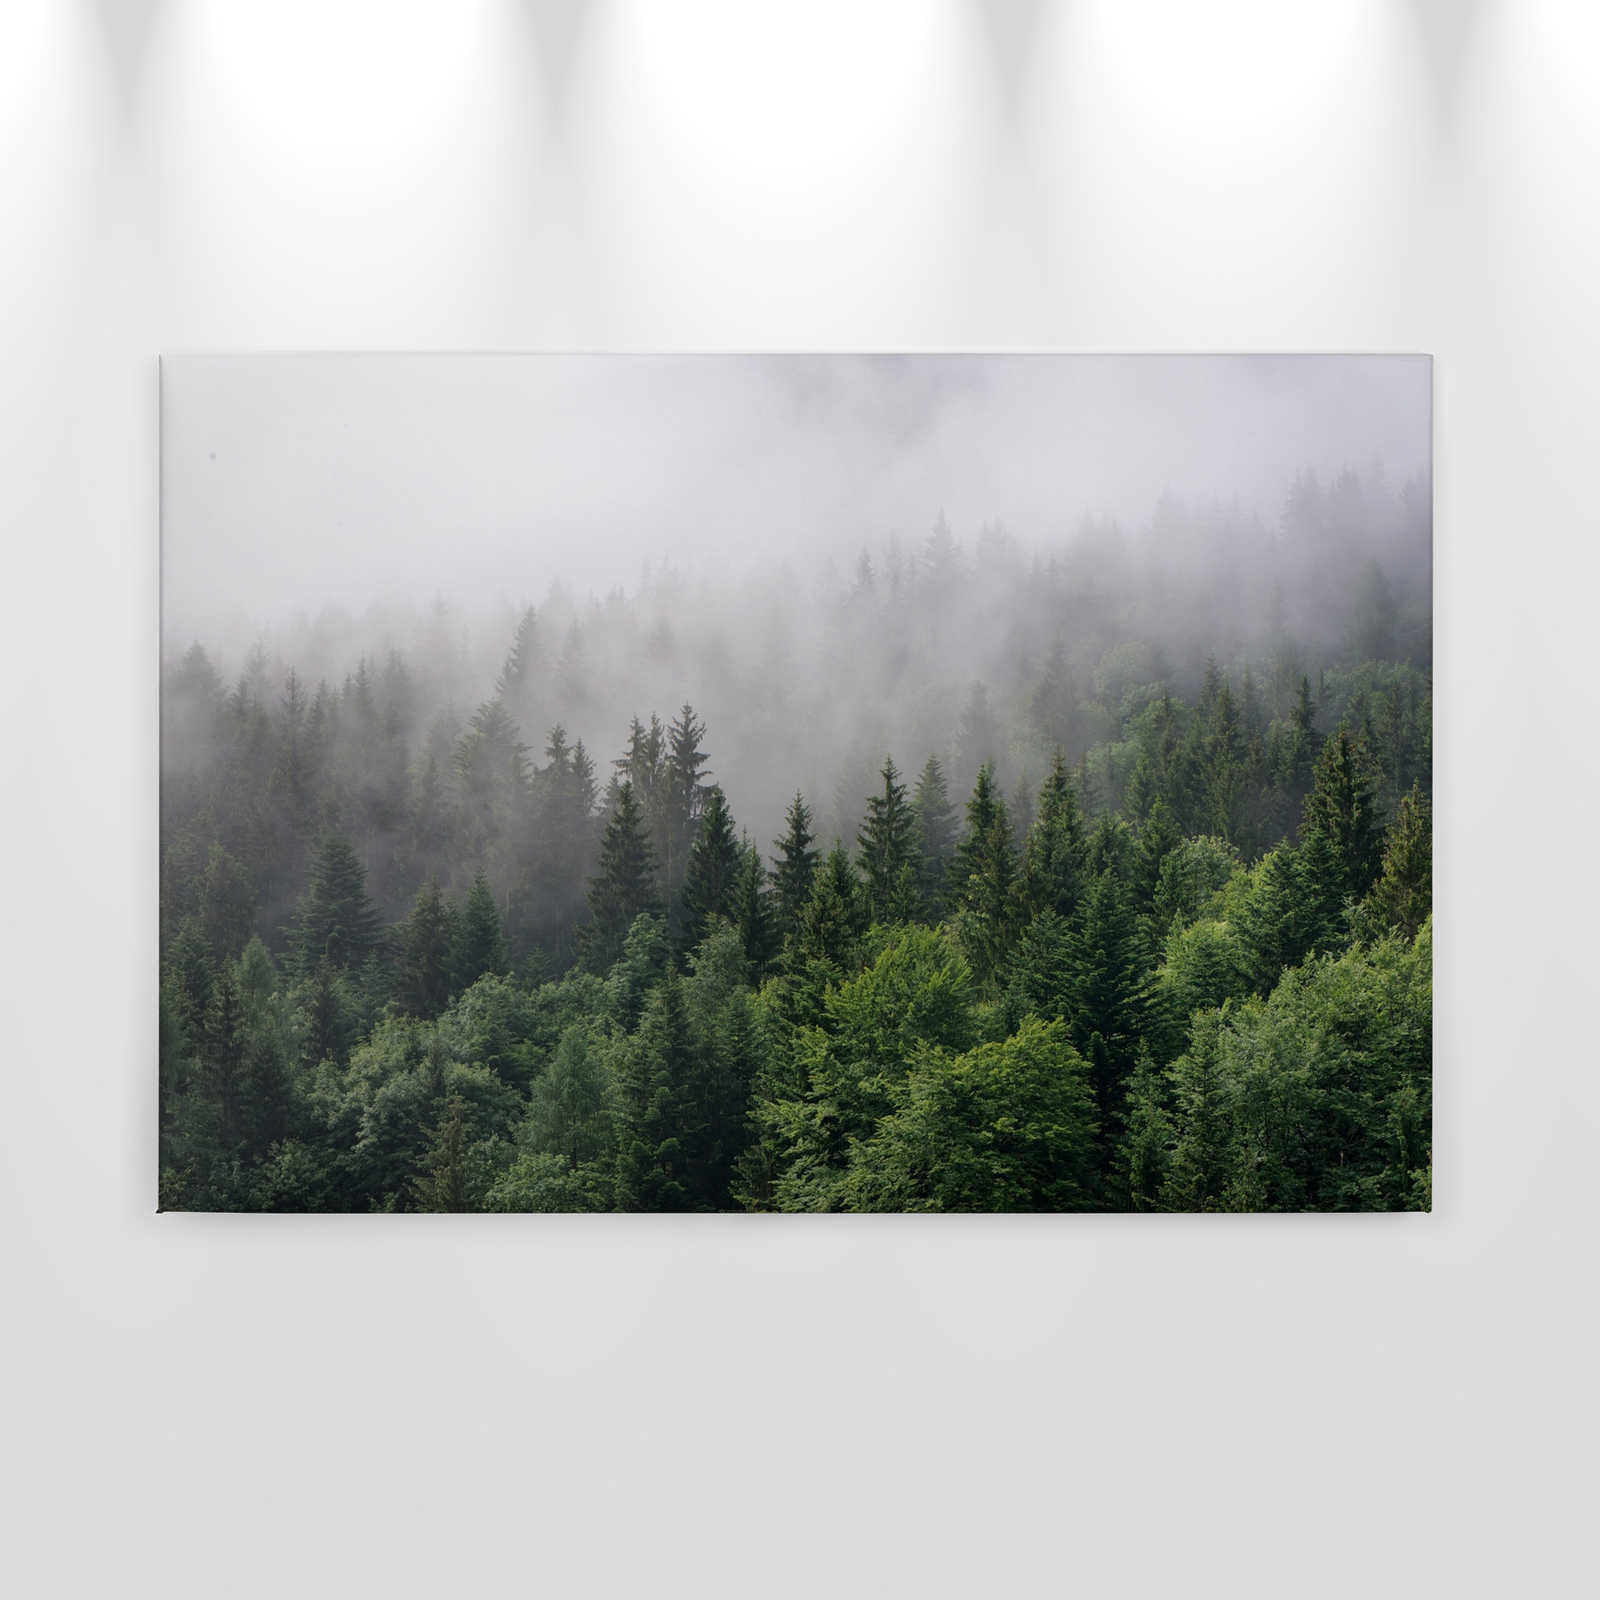             Lienzo con bosque desde arriba en un día de niebla - 0,90 m x 0,60 m
        